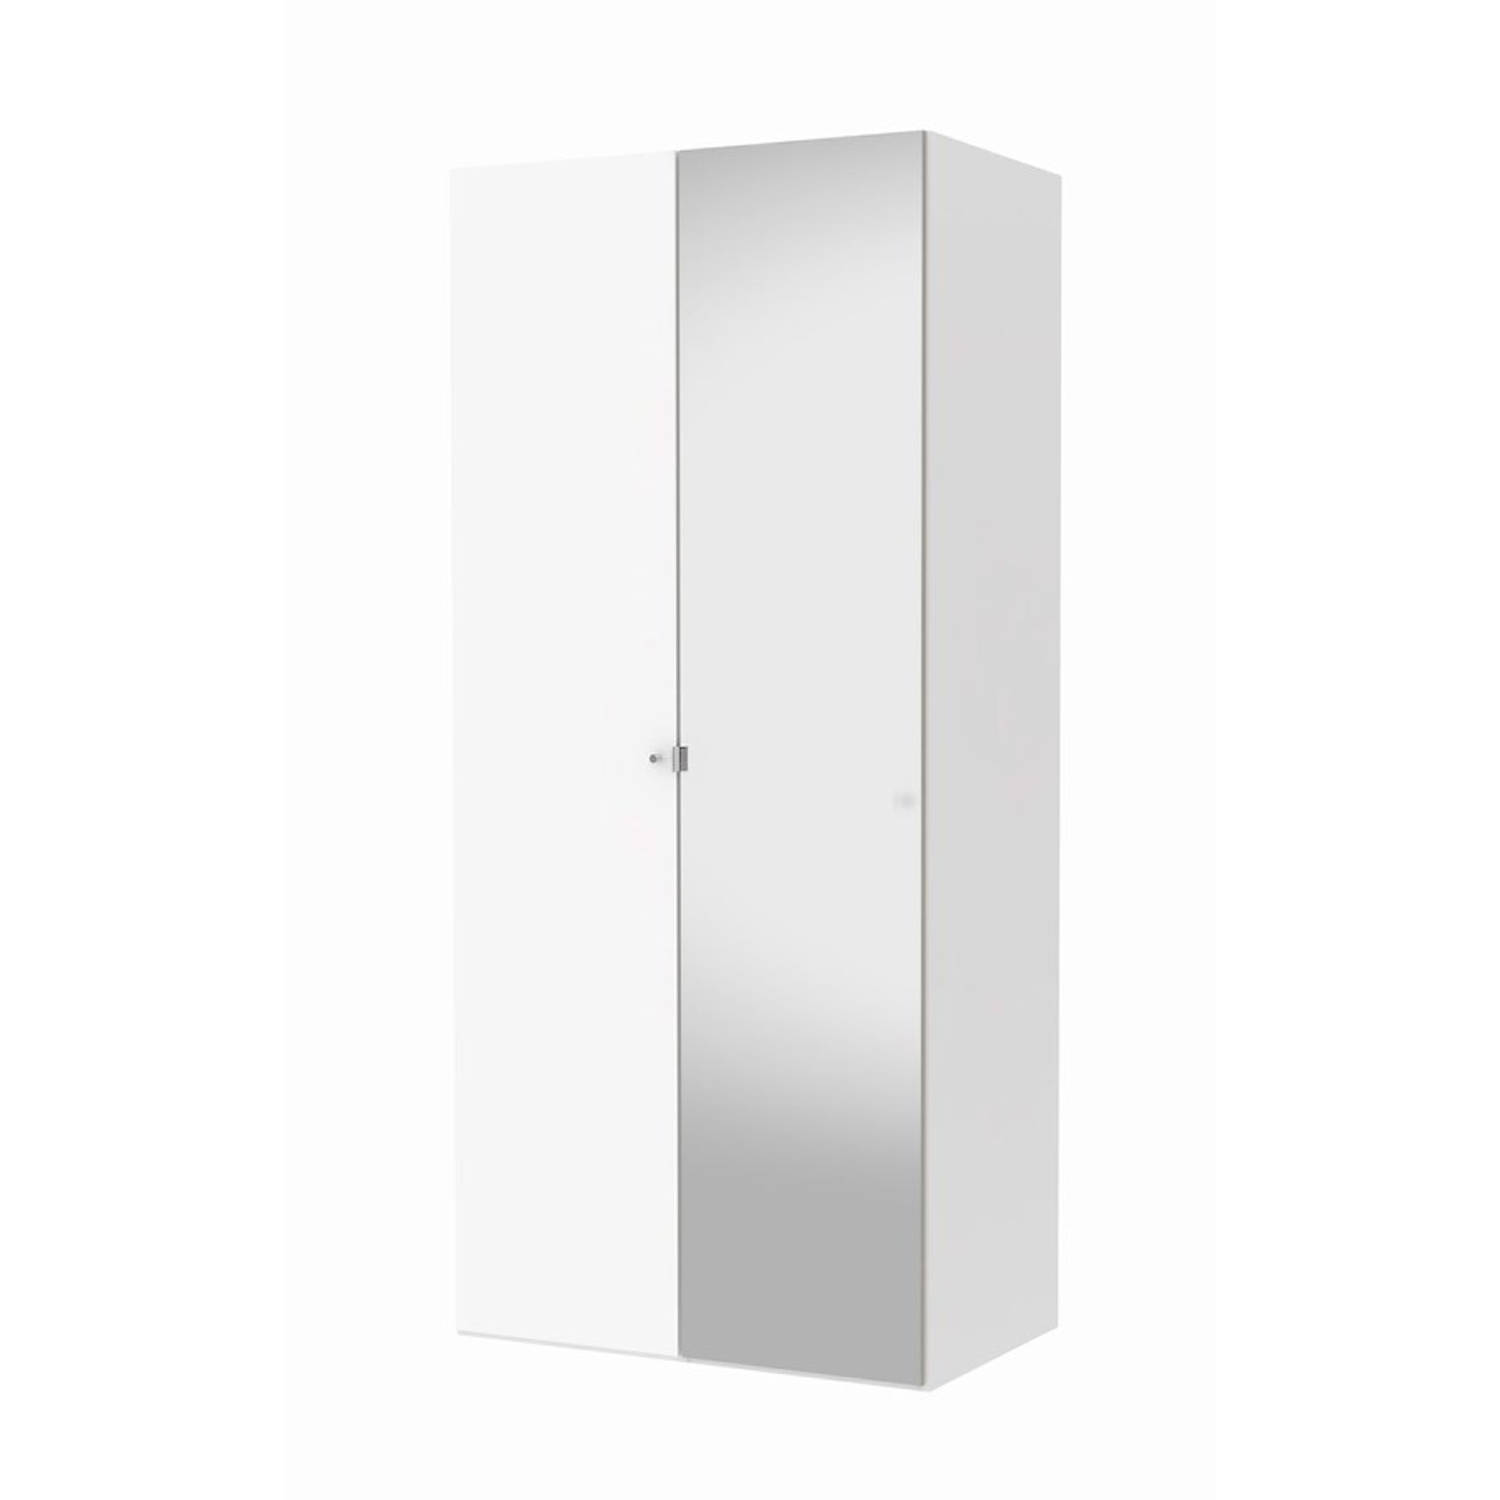 Hioshop Saskia kledingkast 1 spiegeldeur + 1 deur wit en wit